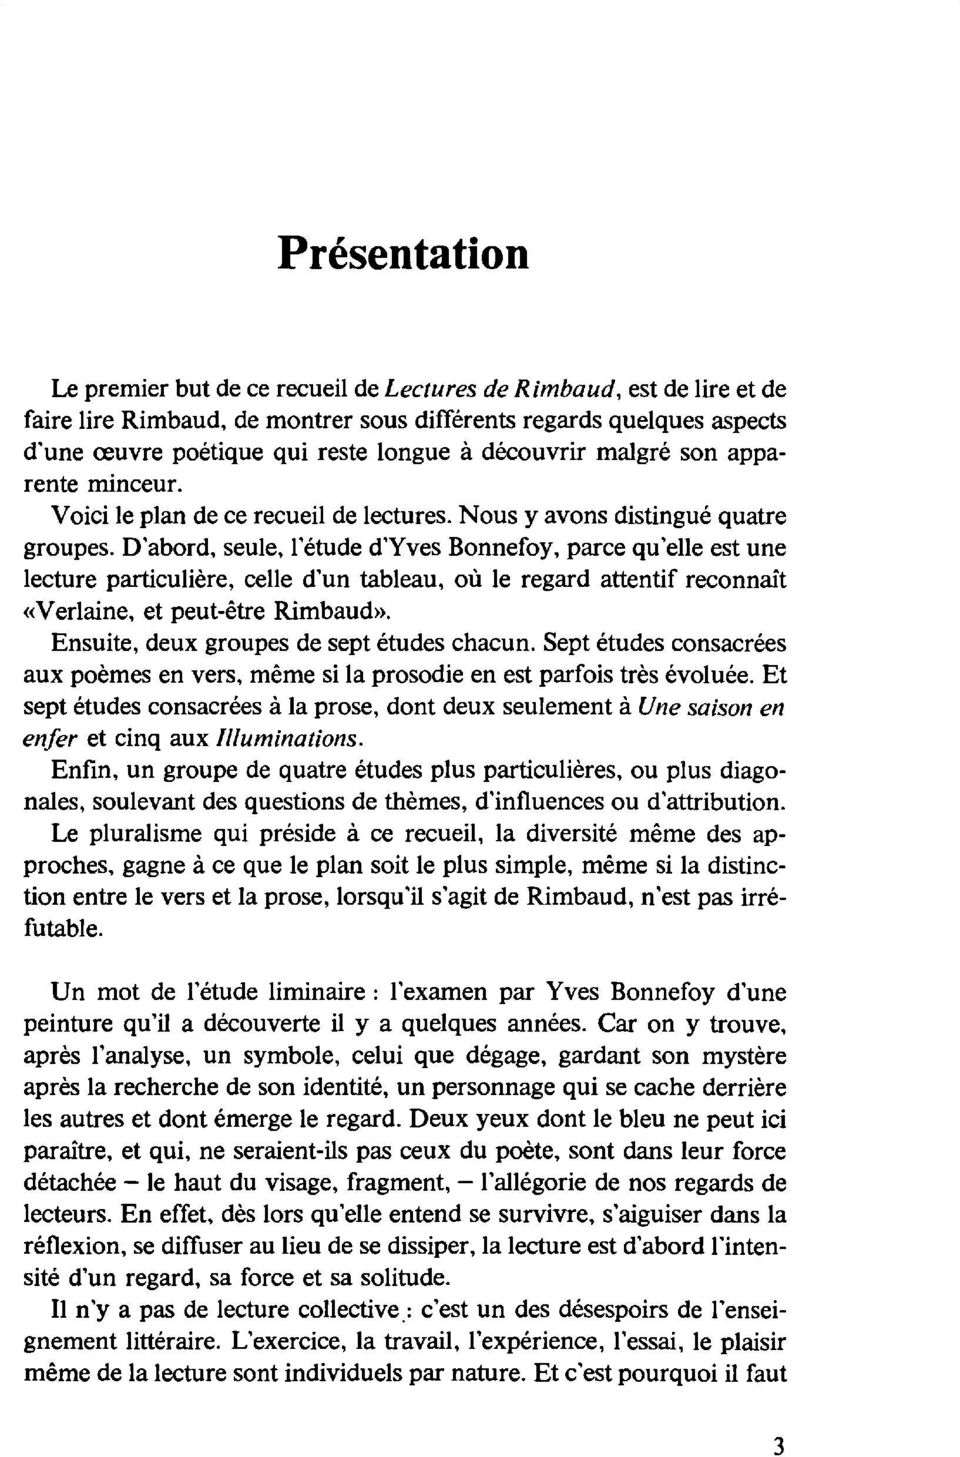 D'abord, seule, l'étude d'yves Bonnefoy, parce qu'elle est une lecture particulière, celle d'un tableau, où le regard attentif reconnaît «Verlaine, et peut-être Rimbaud».